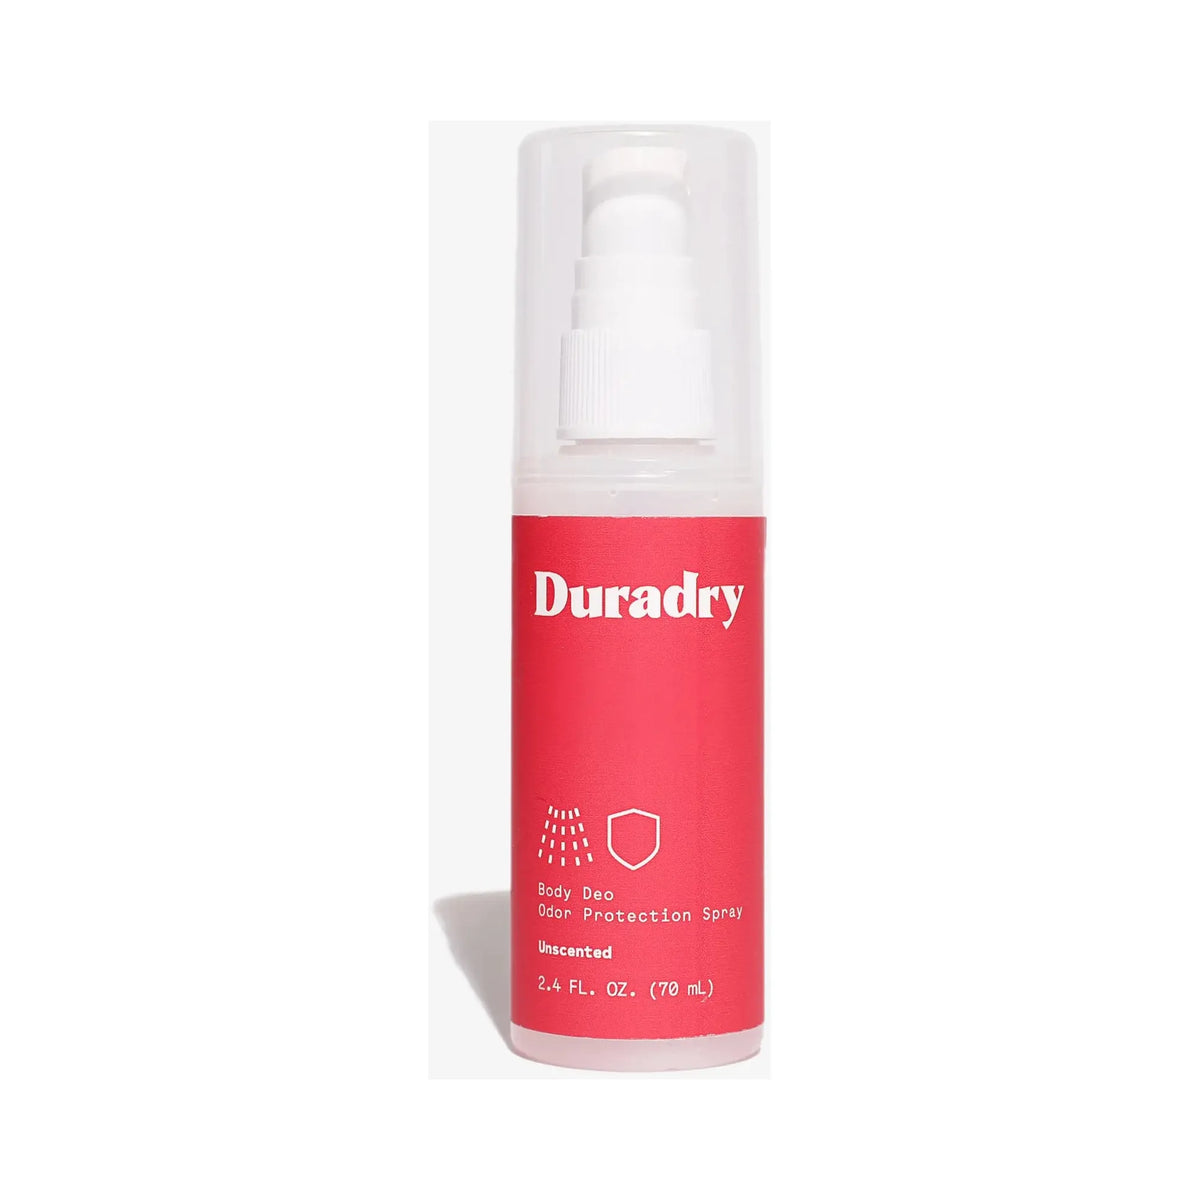 Duradry Body Spray